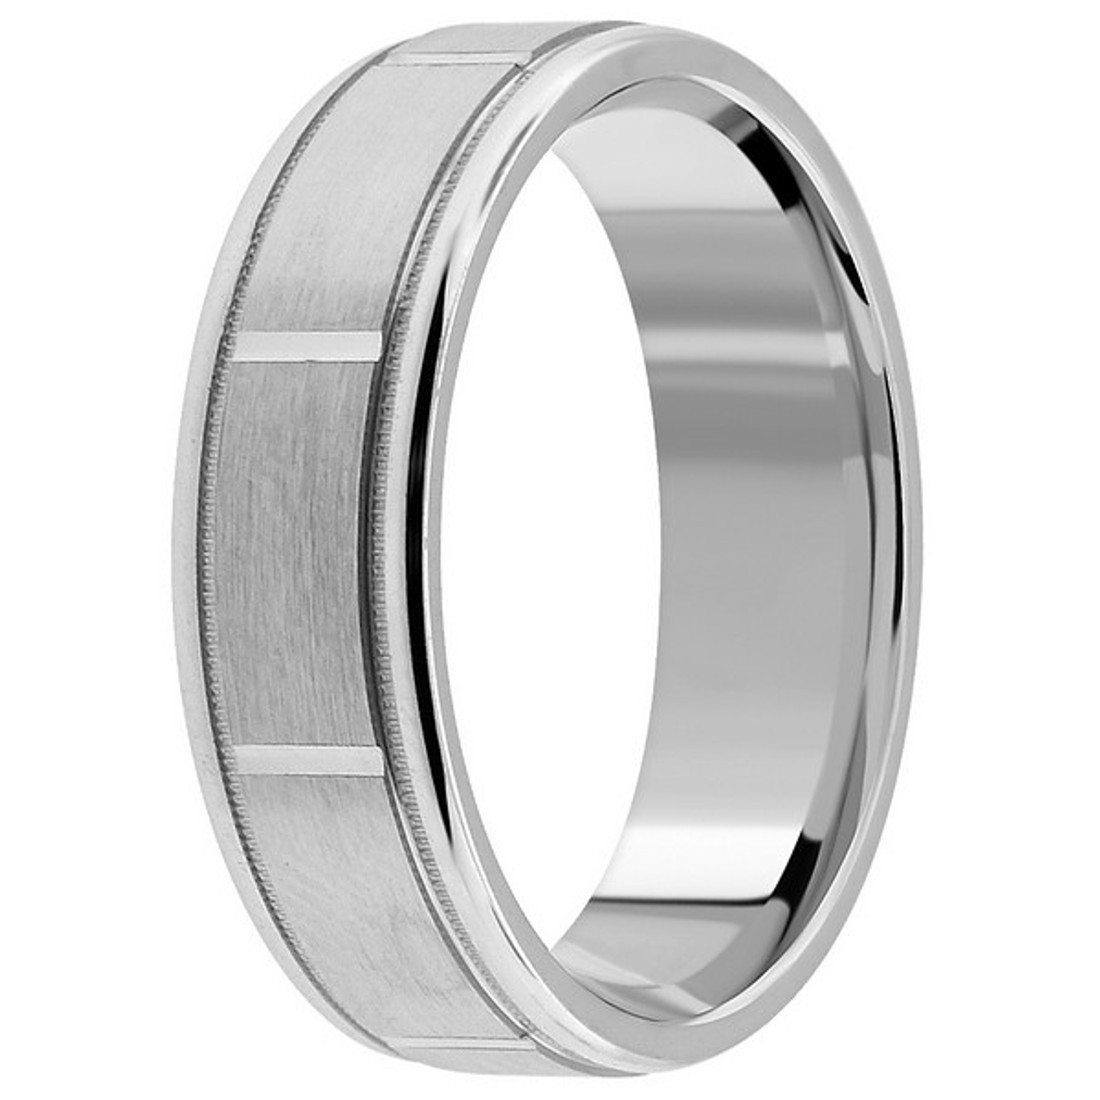 4mm Braided Weaved Platinum Wedding Band Handmade Ring